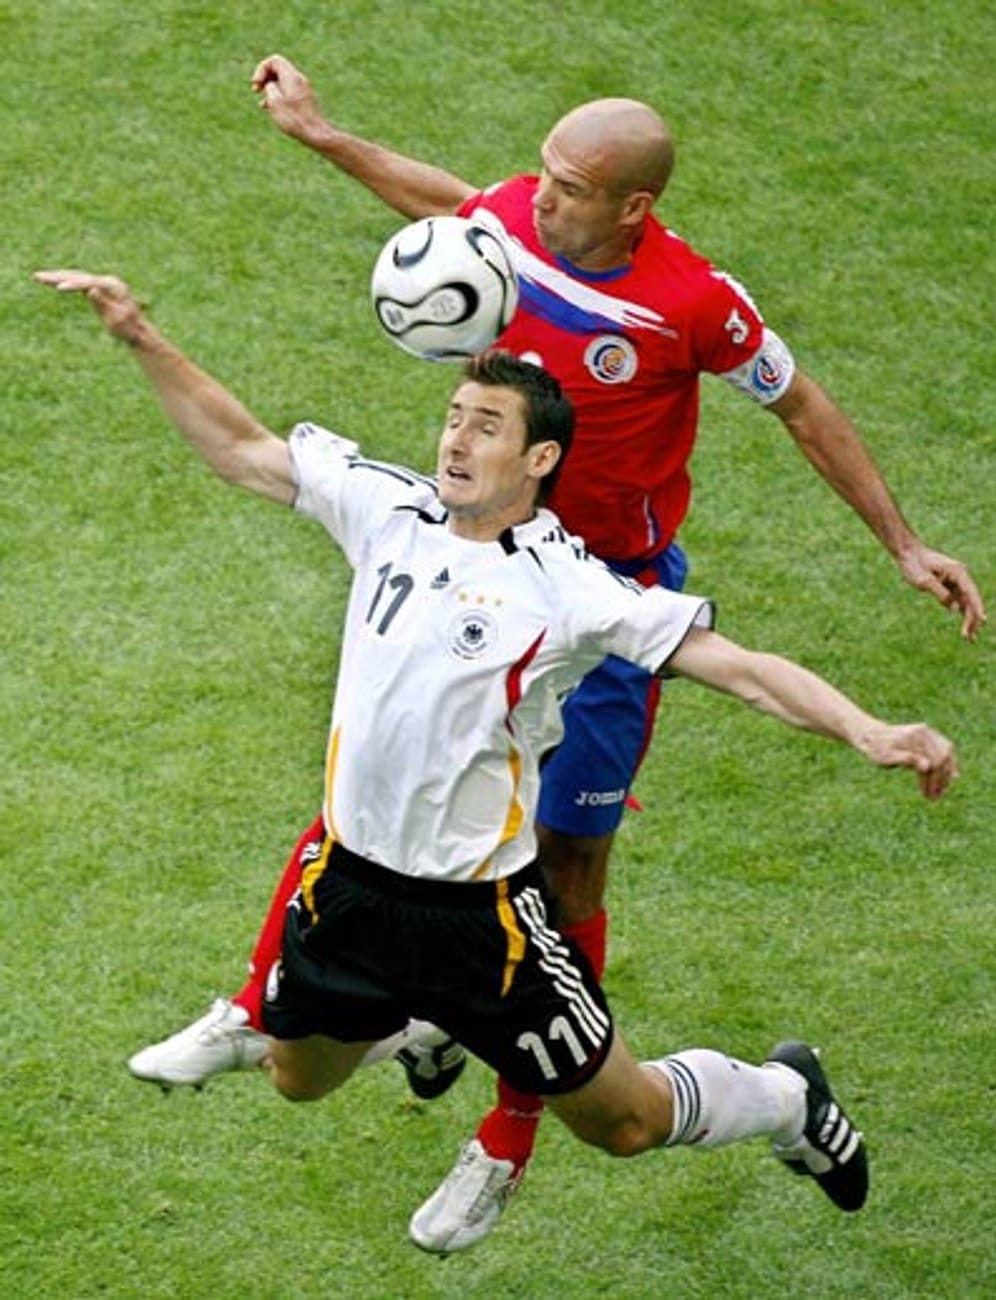 9. Juni 2006 in München - 4:2 gegen Costa Rica: Und wieder Miroslav Klose (Bild vorne): Mit zwei Treffern ist der Angreifer erneut Sieggarant zum WM-Auftakt und gibt damit das Startsignal für das deutsche Sommermärchen, dem die finale Krönung versagt bleibt. Nach dem Halbfinal-K.o. gegen Italien wird aber auch Platz drei gefeiert.